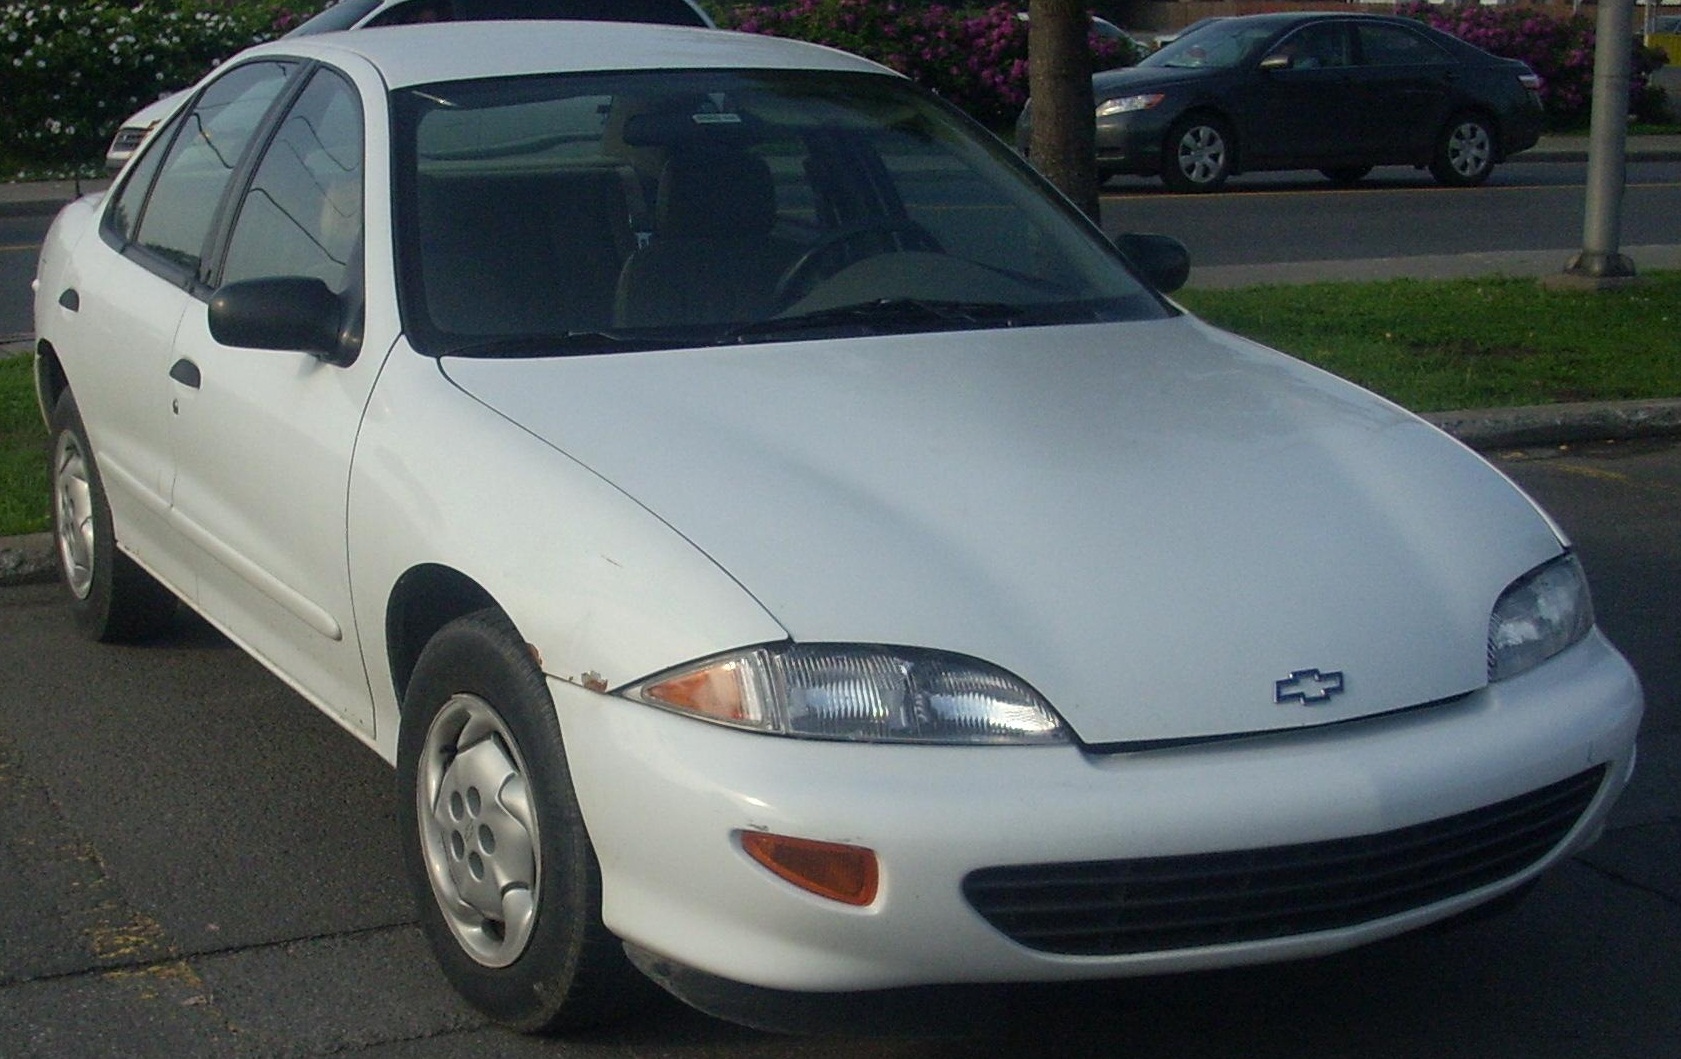 File:1995-98 Chevrolet Cavalier Sedan.JPG - Wikimedia Commons